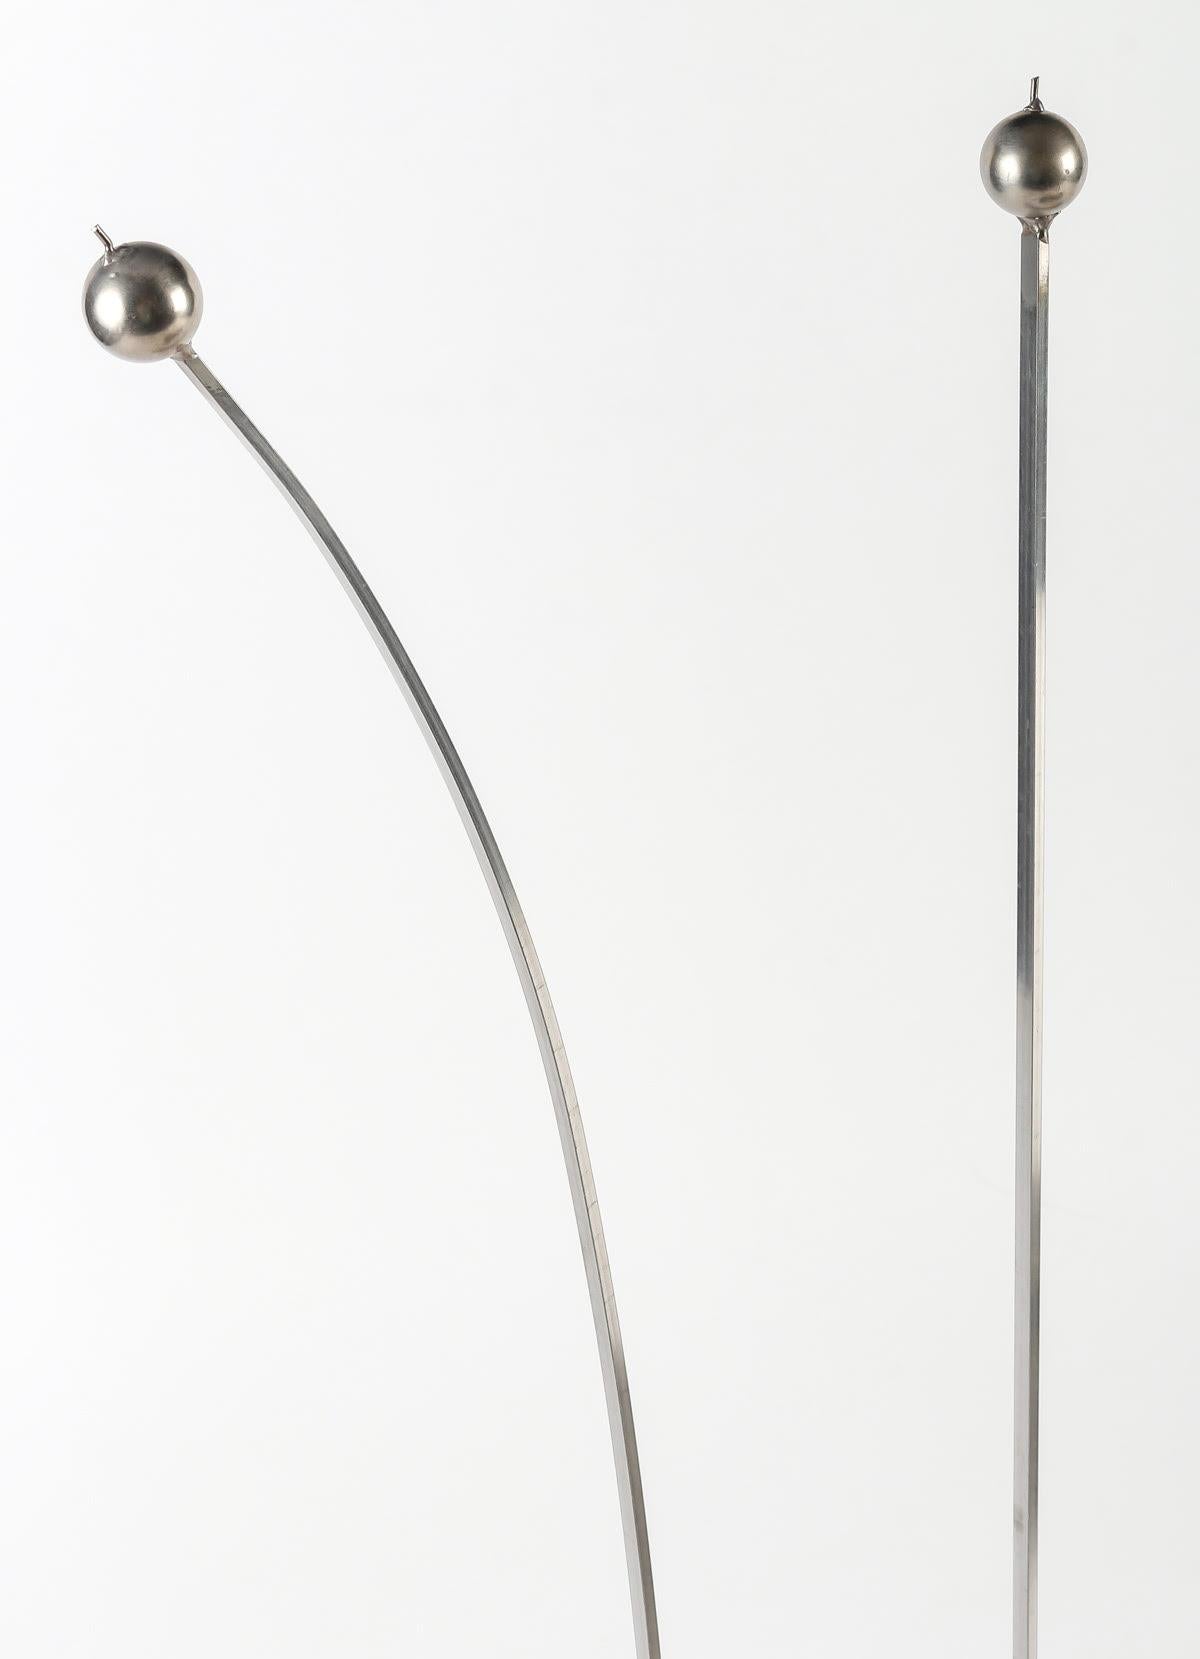 Kaminsims, Skulptur, Stahl und Kettenhemd, Design, 1980–1990.

Firewall von 1980-1990 aus Stahl und Kettengeflecht, eine echte zeitgenössische Skulptur.

Abmessungen: h: 48cm, B: 63cm, T: 6cm